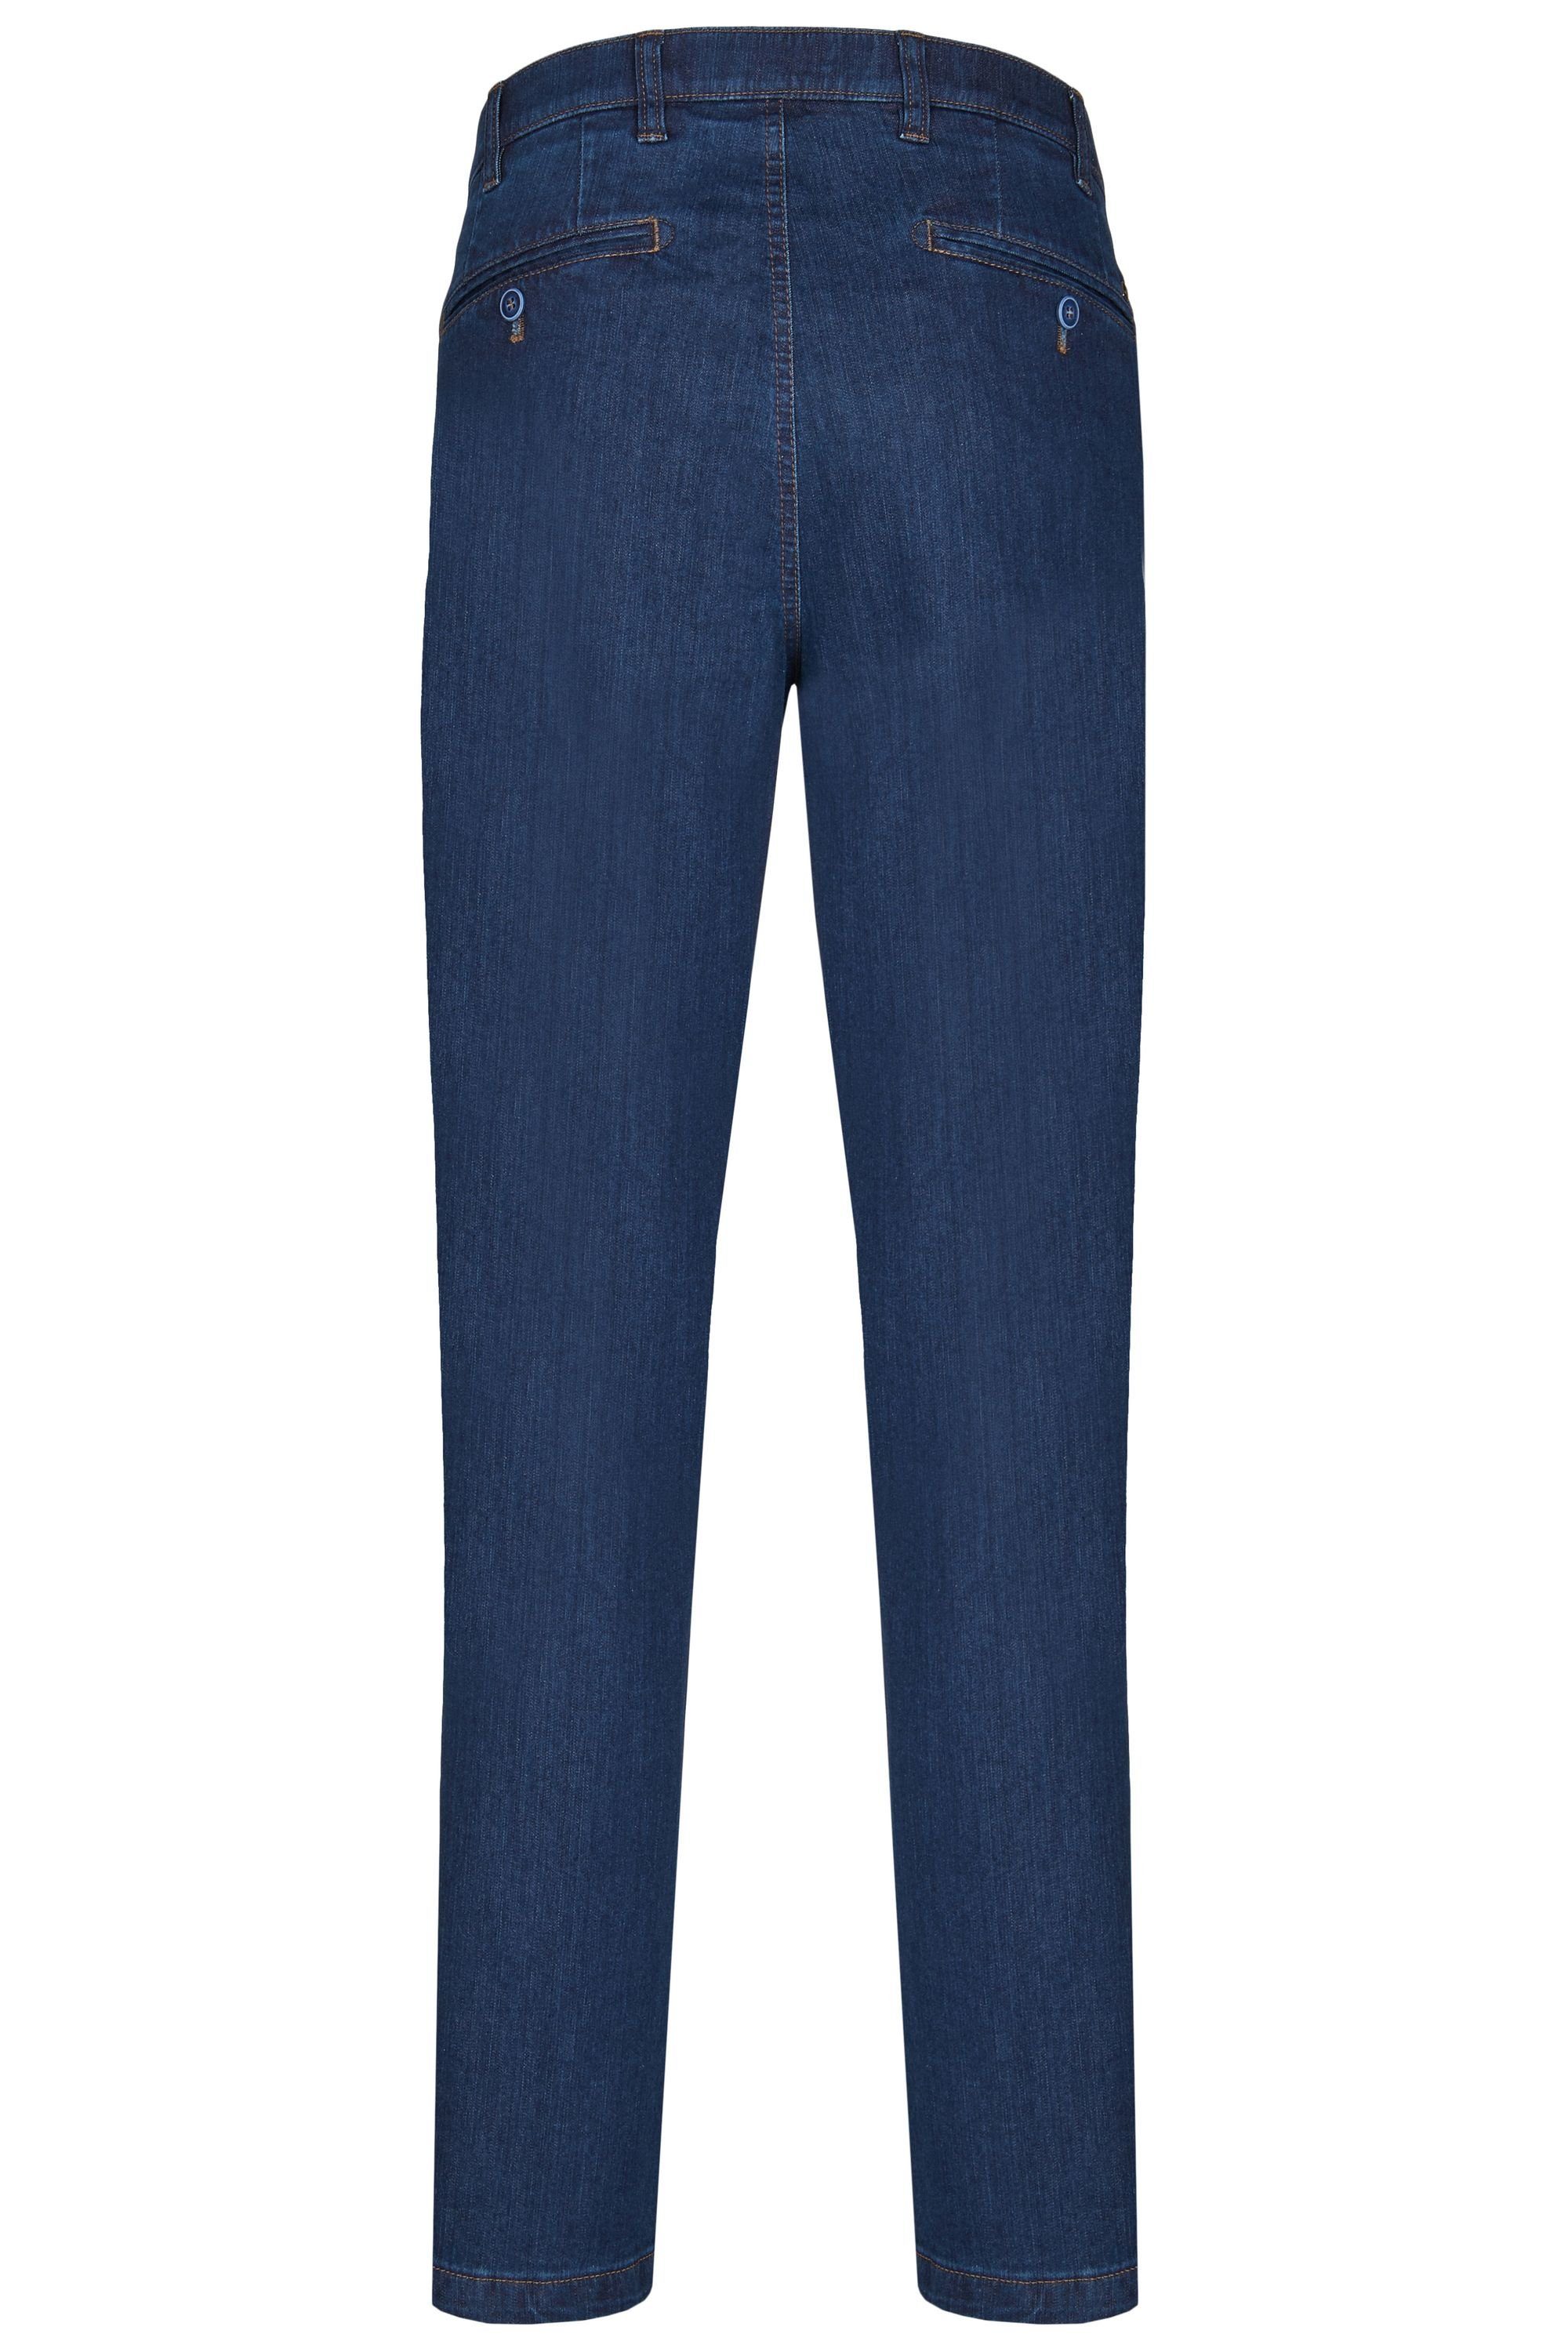 Ganzjahres aus aubi (48) Jeans stone Hose Perfect High Flex Modell Fit dark Stretch Baumwolle 526 Herren aubi: Jeans Bequeme